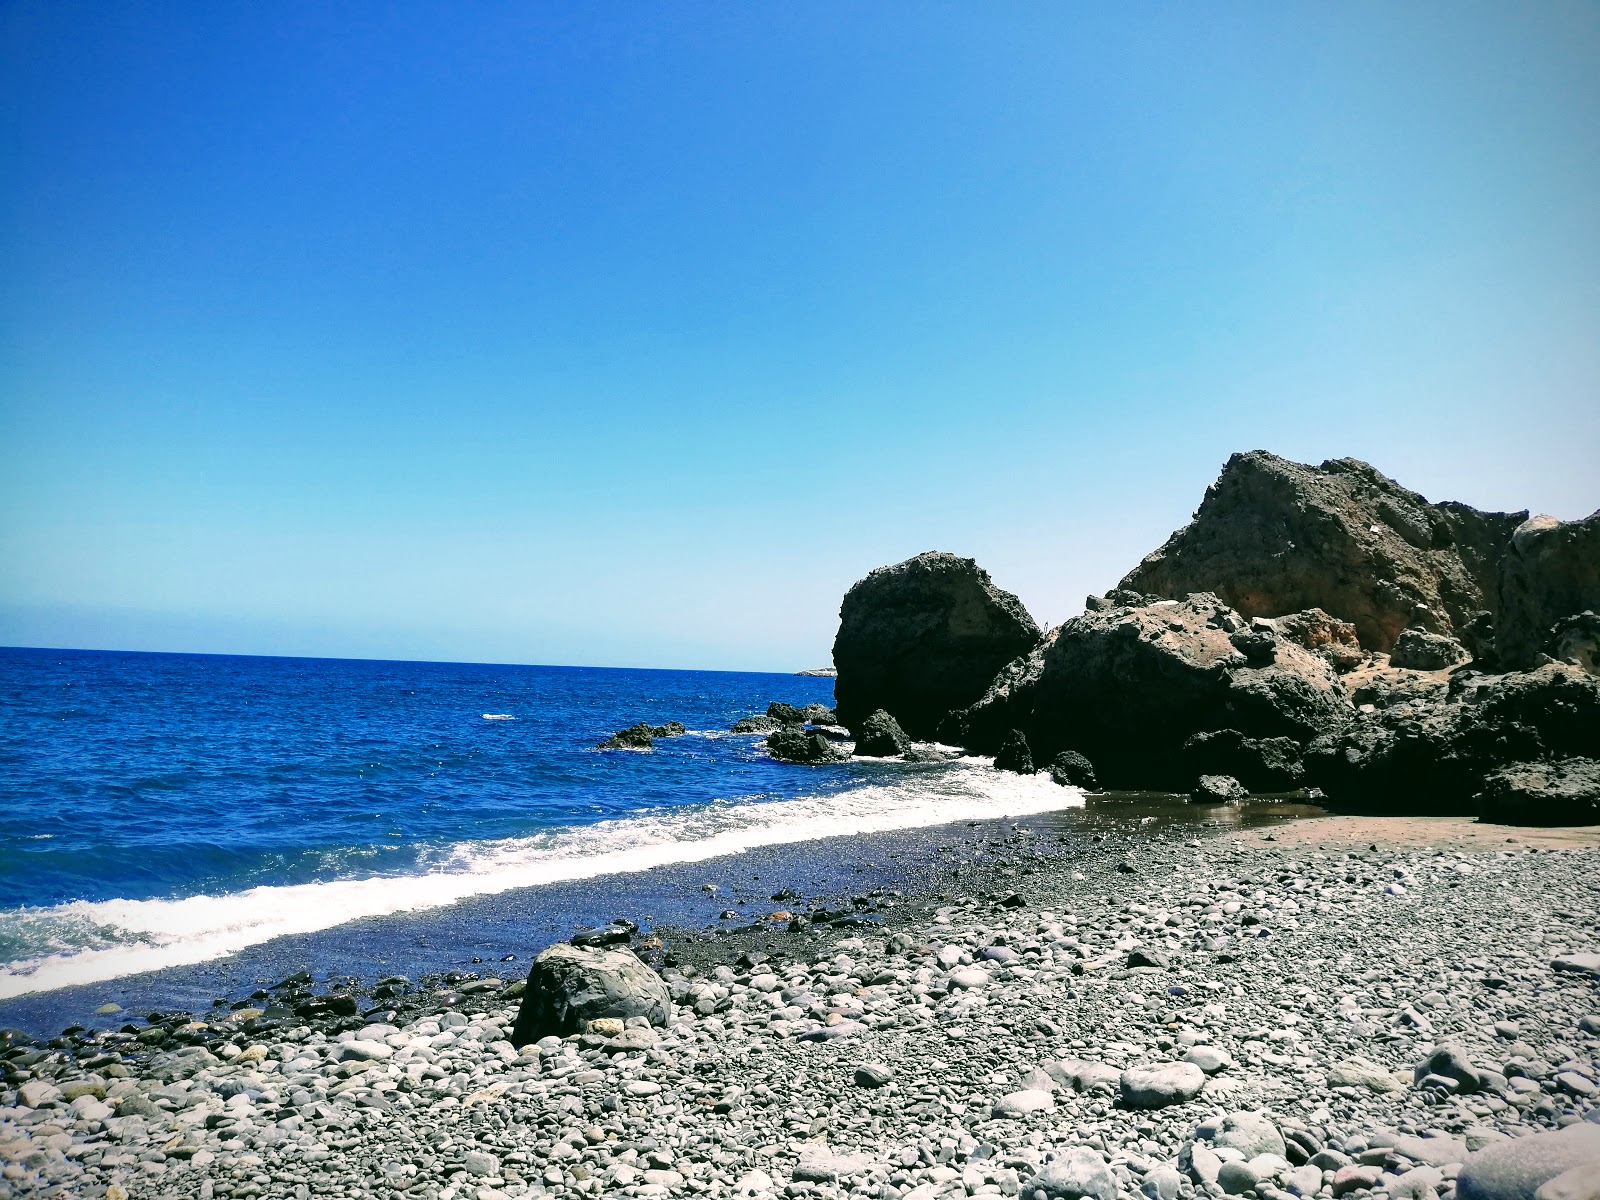 Playa Lomo Galeon'in fotoğrafı gri kum ve çakıl yüzey ile